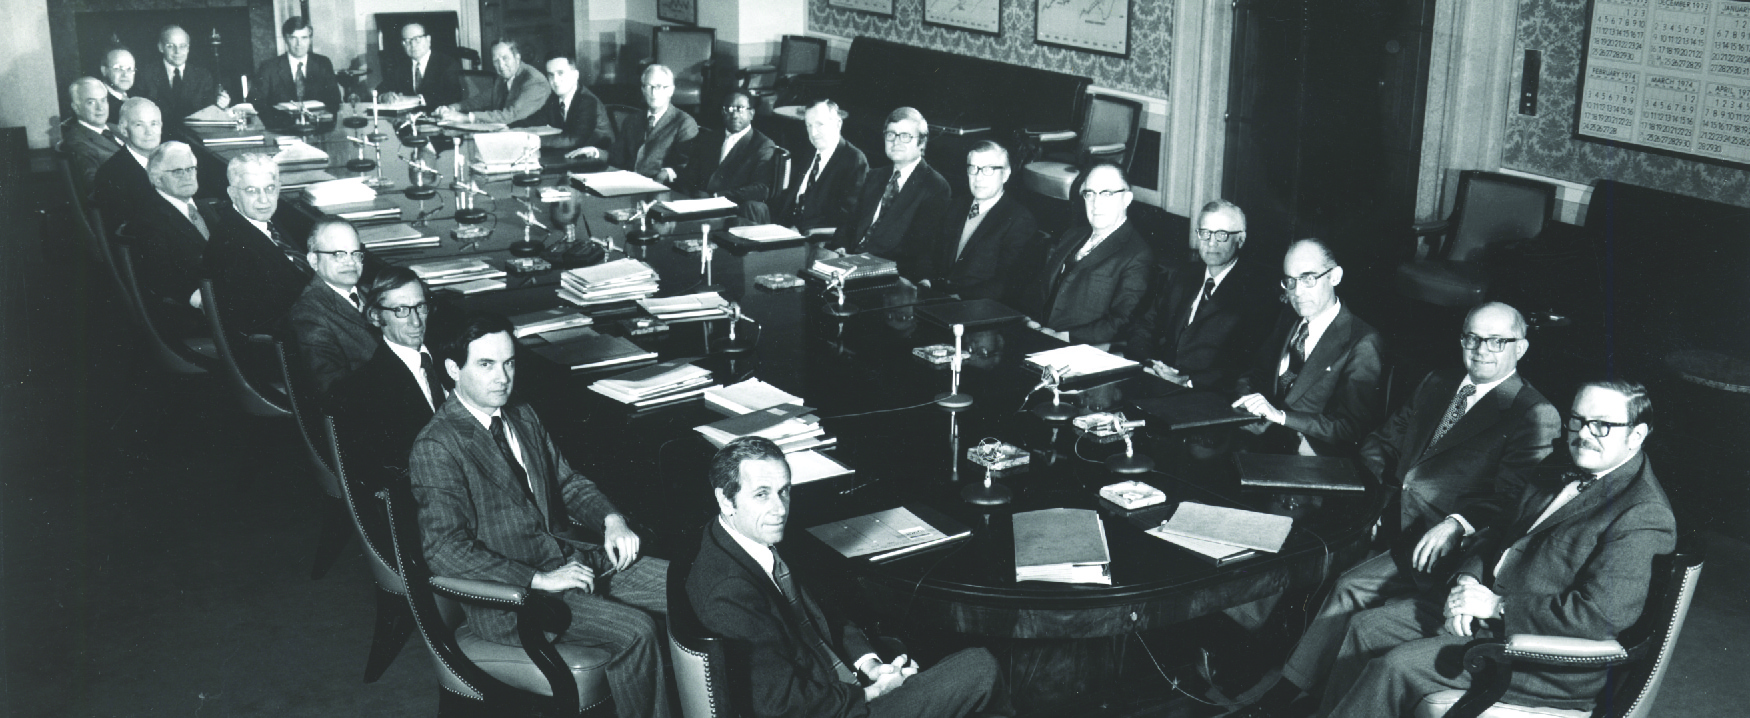 Esta imagem mostra vinte e três homens brancos e um homem negro em ternos sentados ao redor de uma grande mesa em estilo de sala de reuniões.